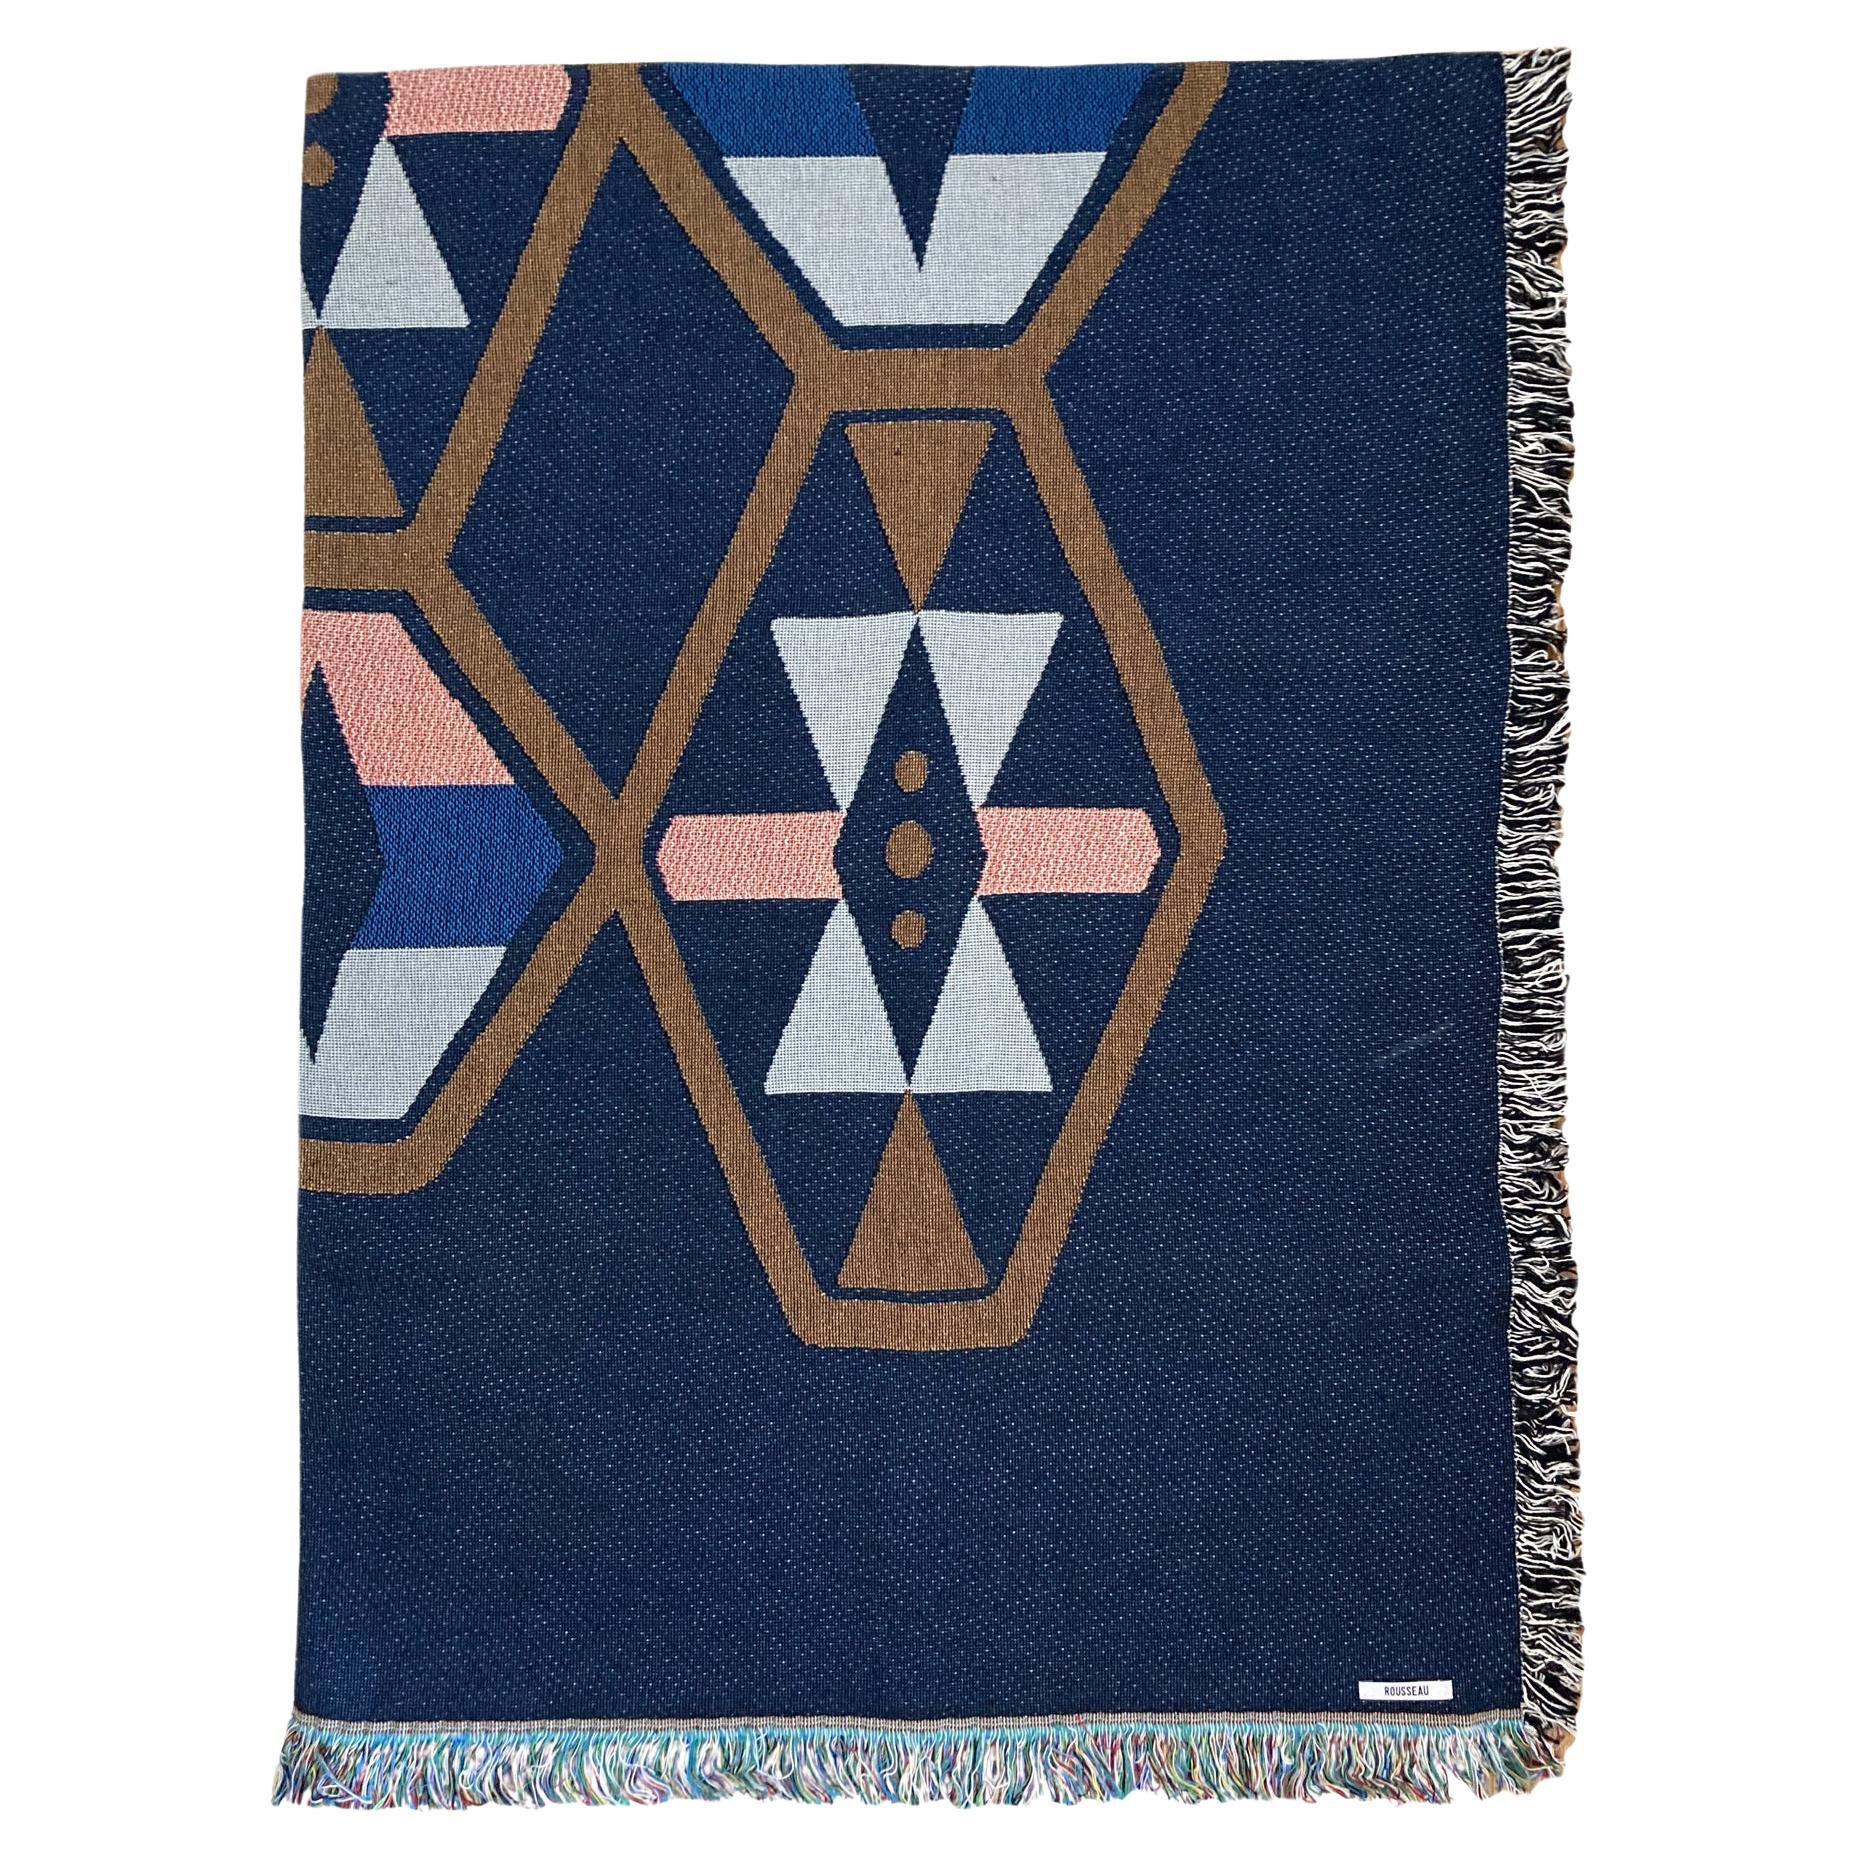 Couverture en coton Loom Woven, bleu marine Twilight Geo, 54 x 72